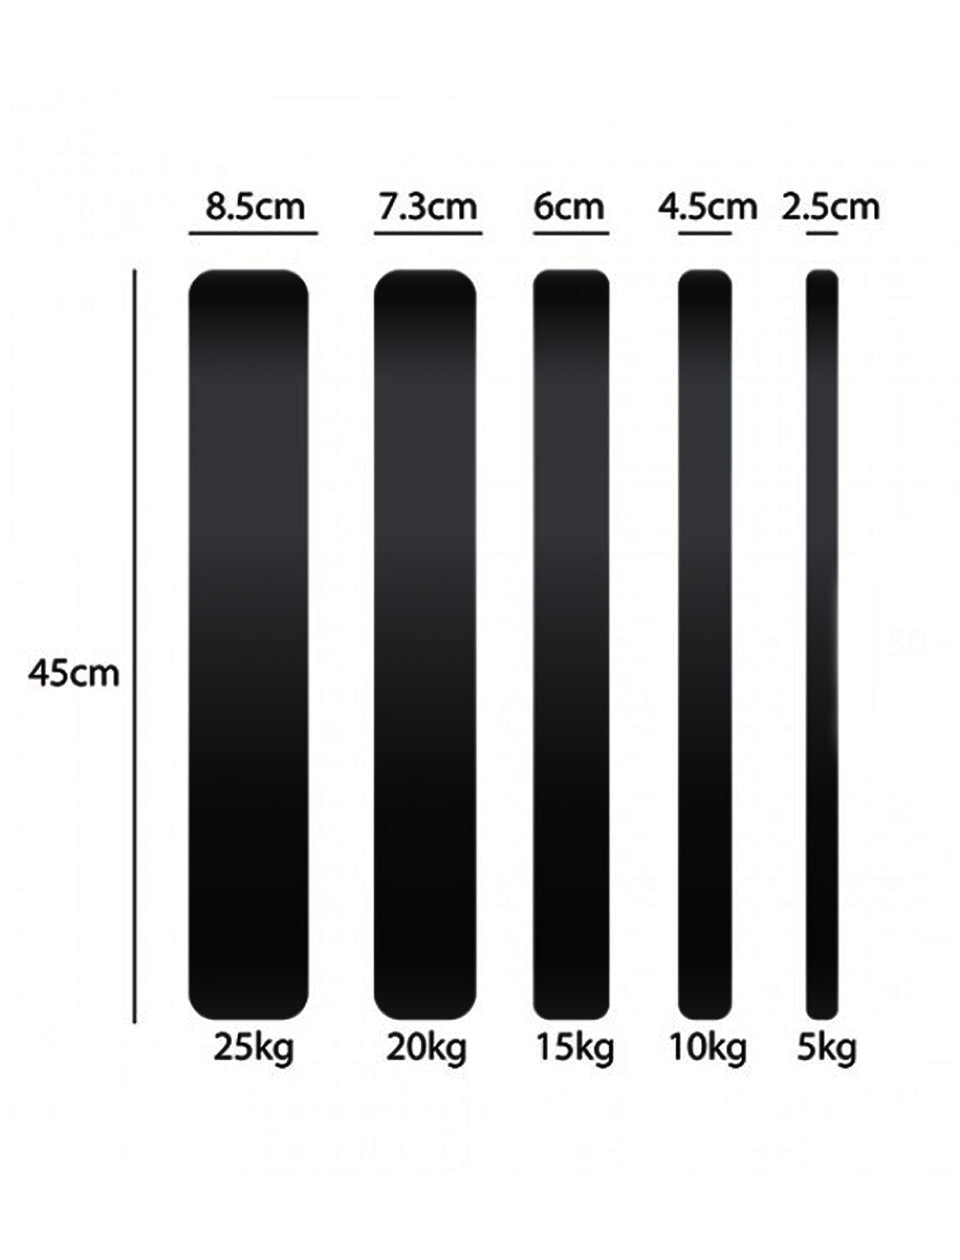 Black Rubber Bumper Plates - 5 KG to 25 KG